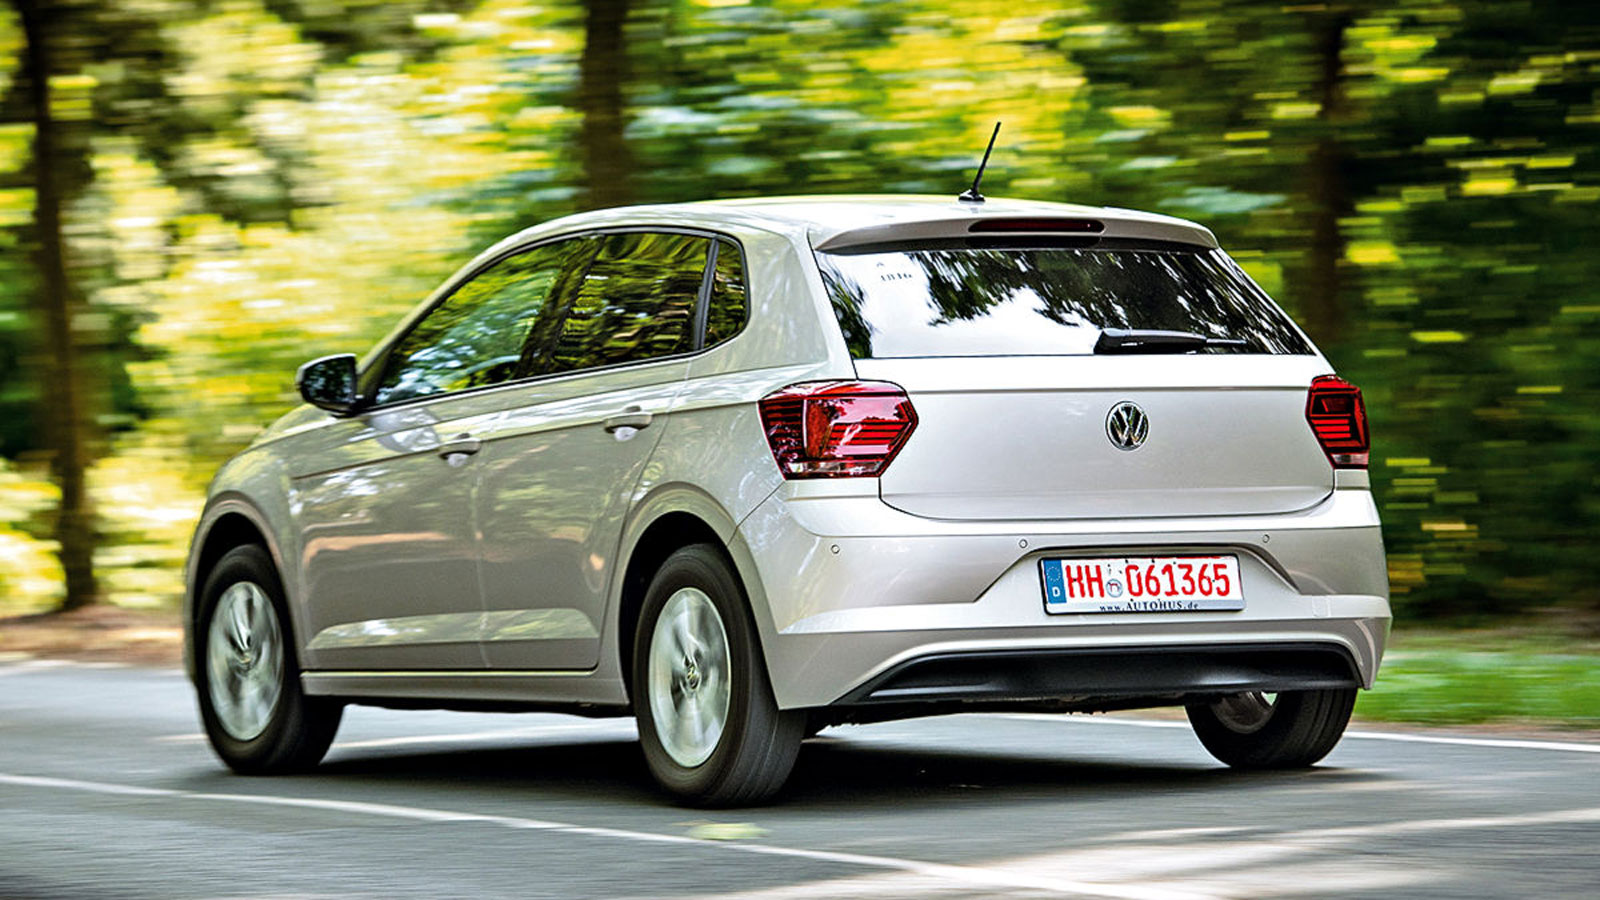 VW Polo MK6: Αξίζει να δώσεις 15.000 ευρώ για μοντέλο πενταετίας;